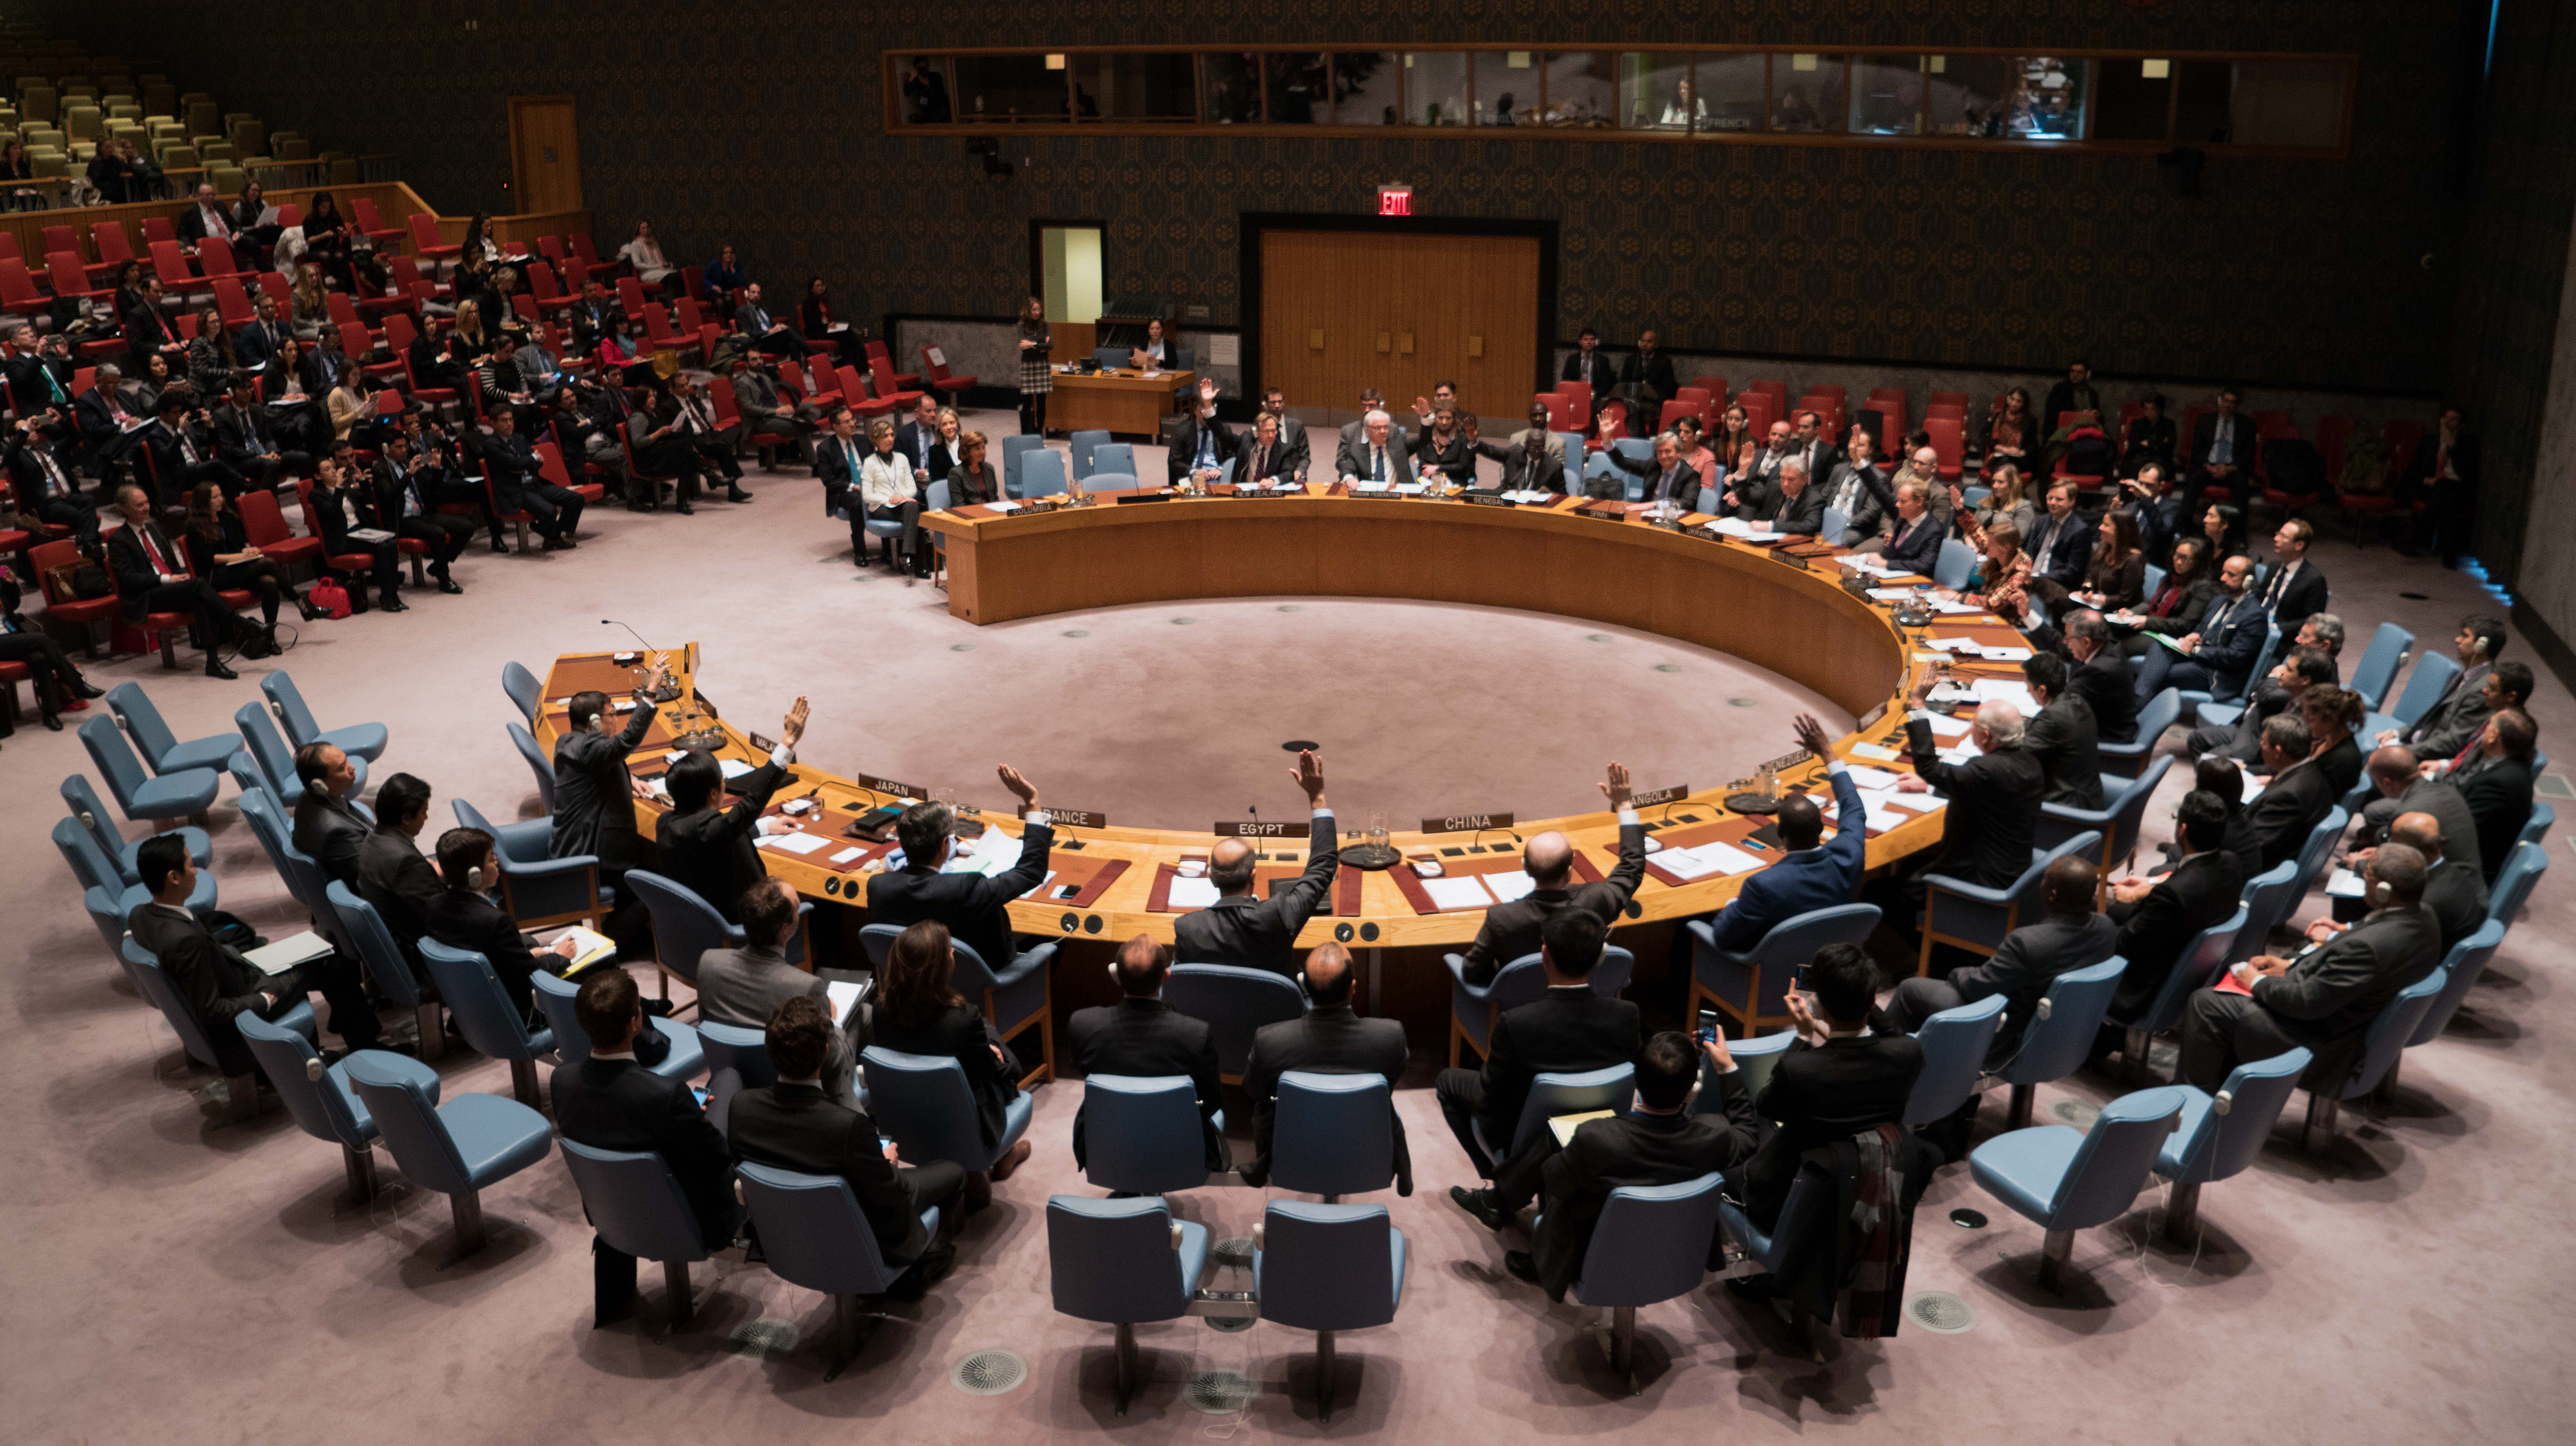 Resolución aprobada por el Consejo de Seguridad de la Organización de Naciones Unidas para el establecimiento de una Misión será una misión política, integrada por observadores internacionales desarmados